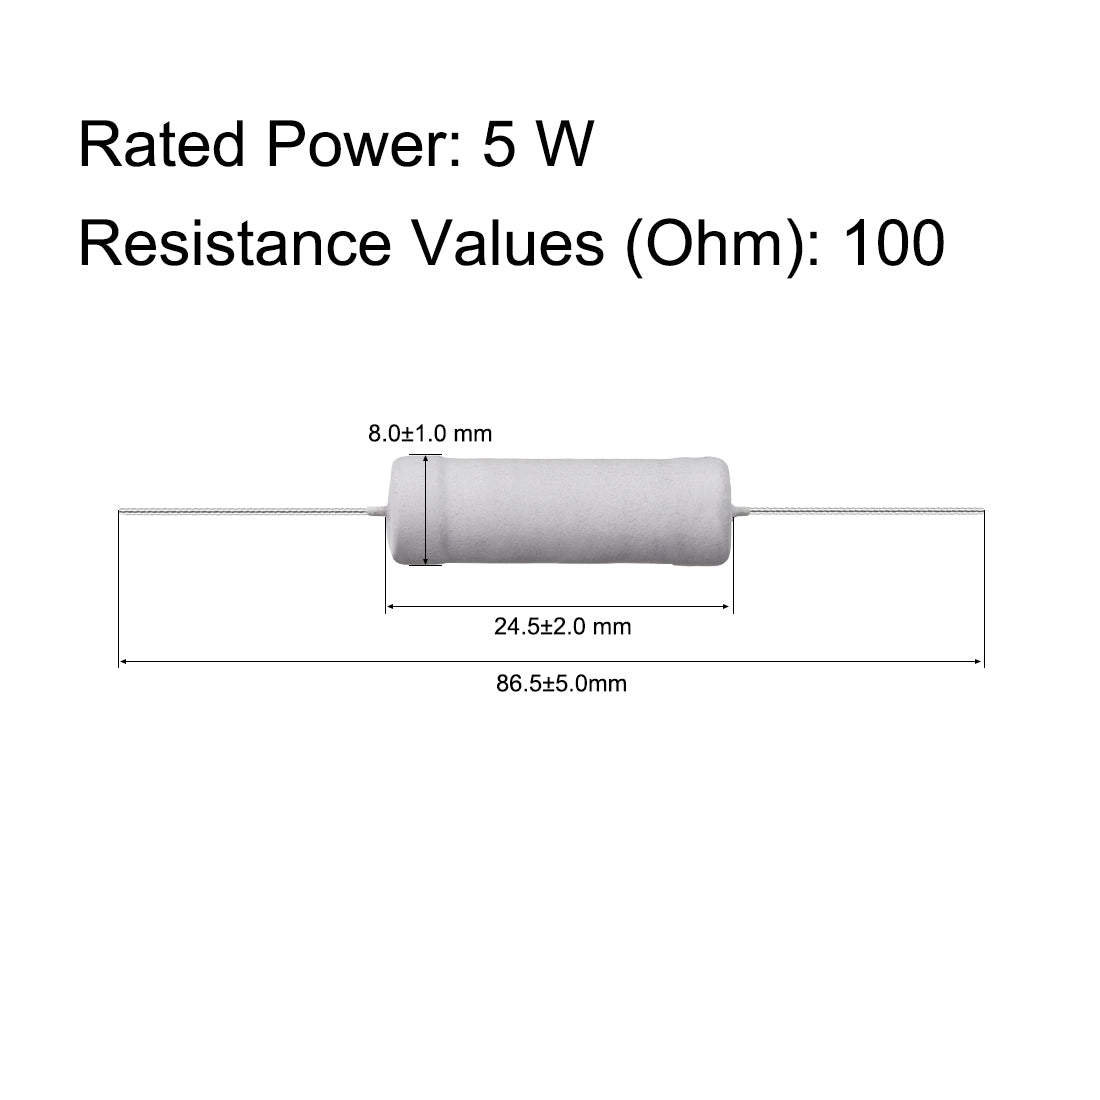 uxcell Uxcell 10 Pcs 5W 5 Watt Metal Oxide Film Resistor Lead 100 Ohm ±5% Tolerance